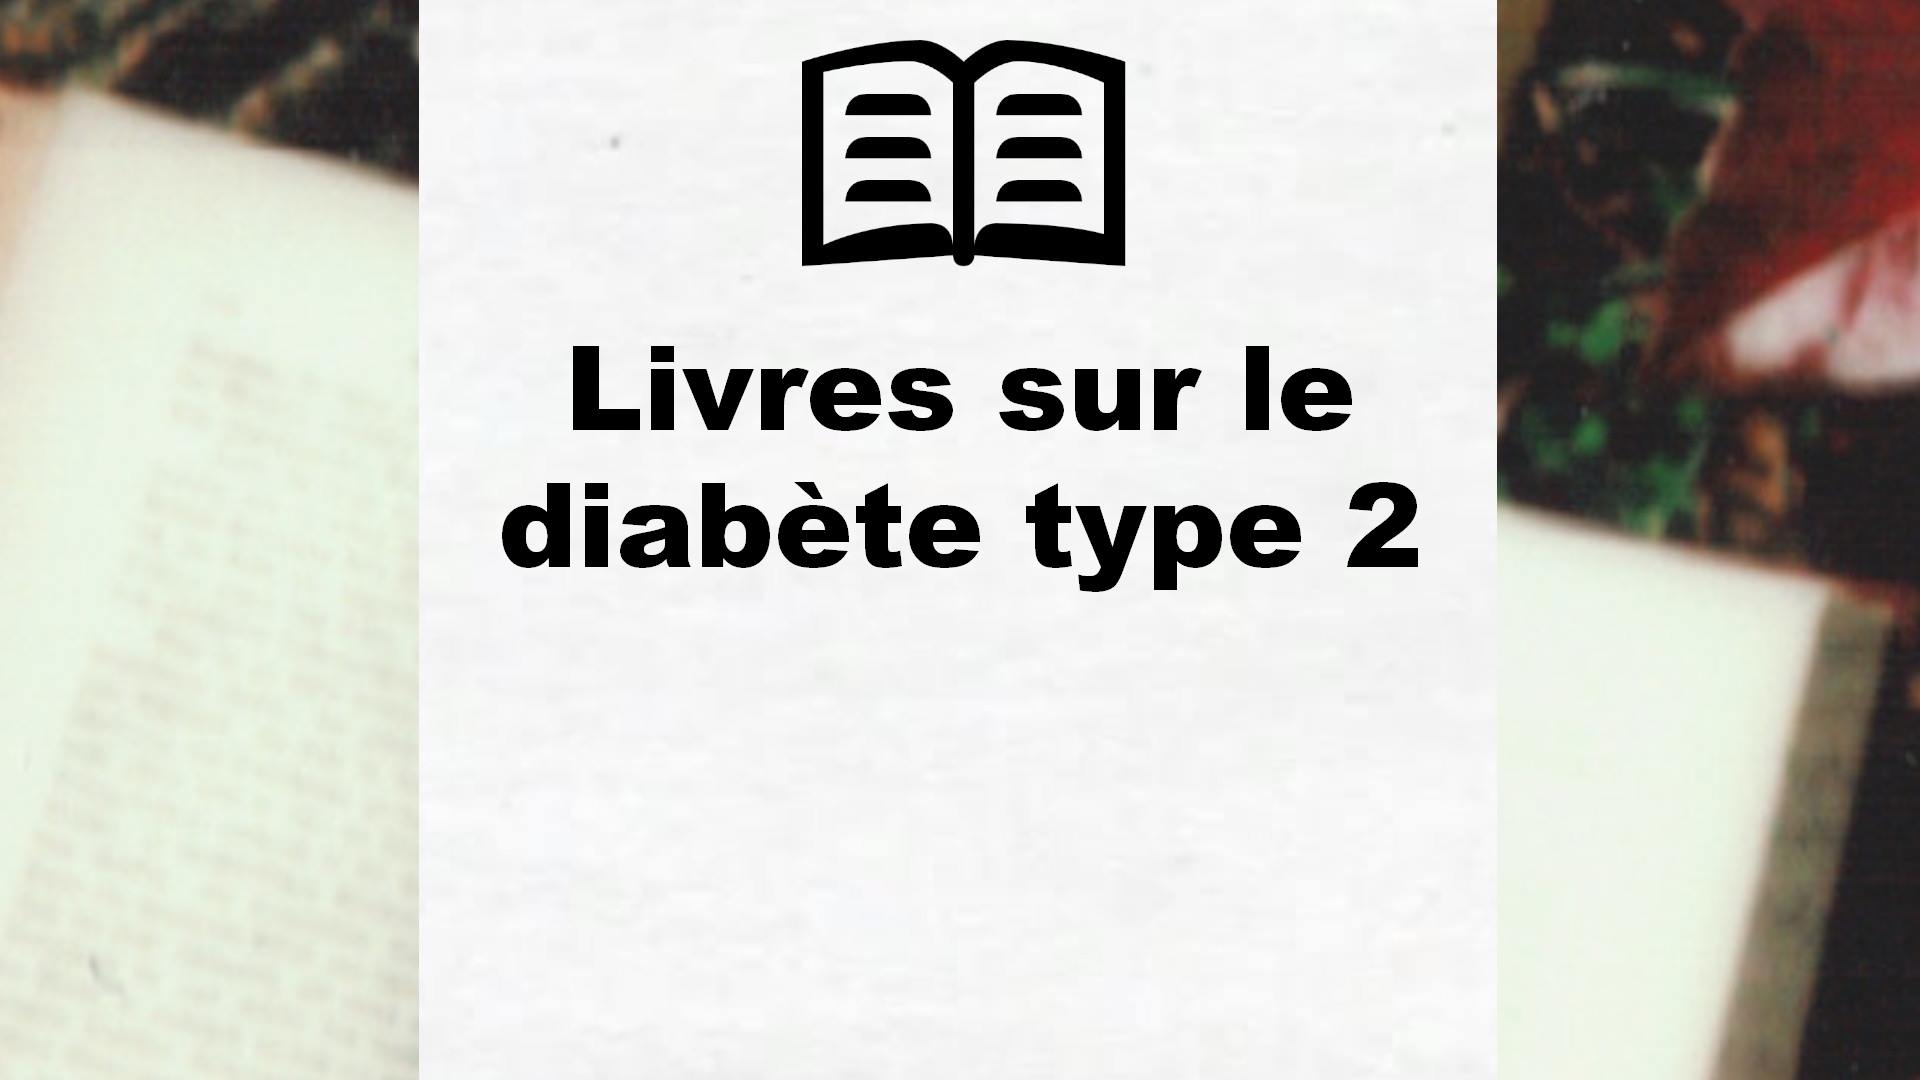 Livres sur le diabète type 2